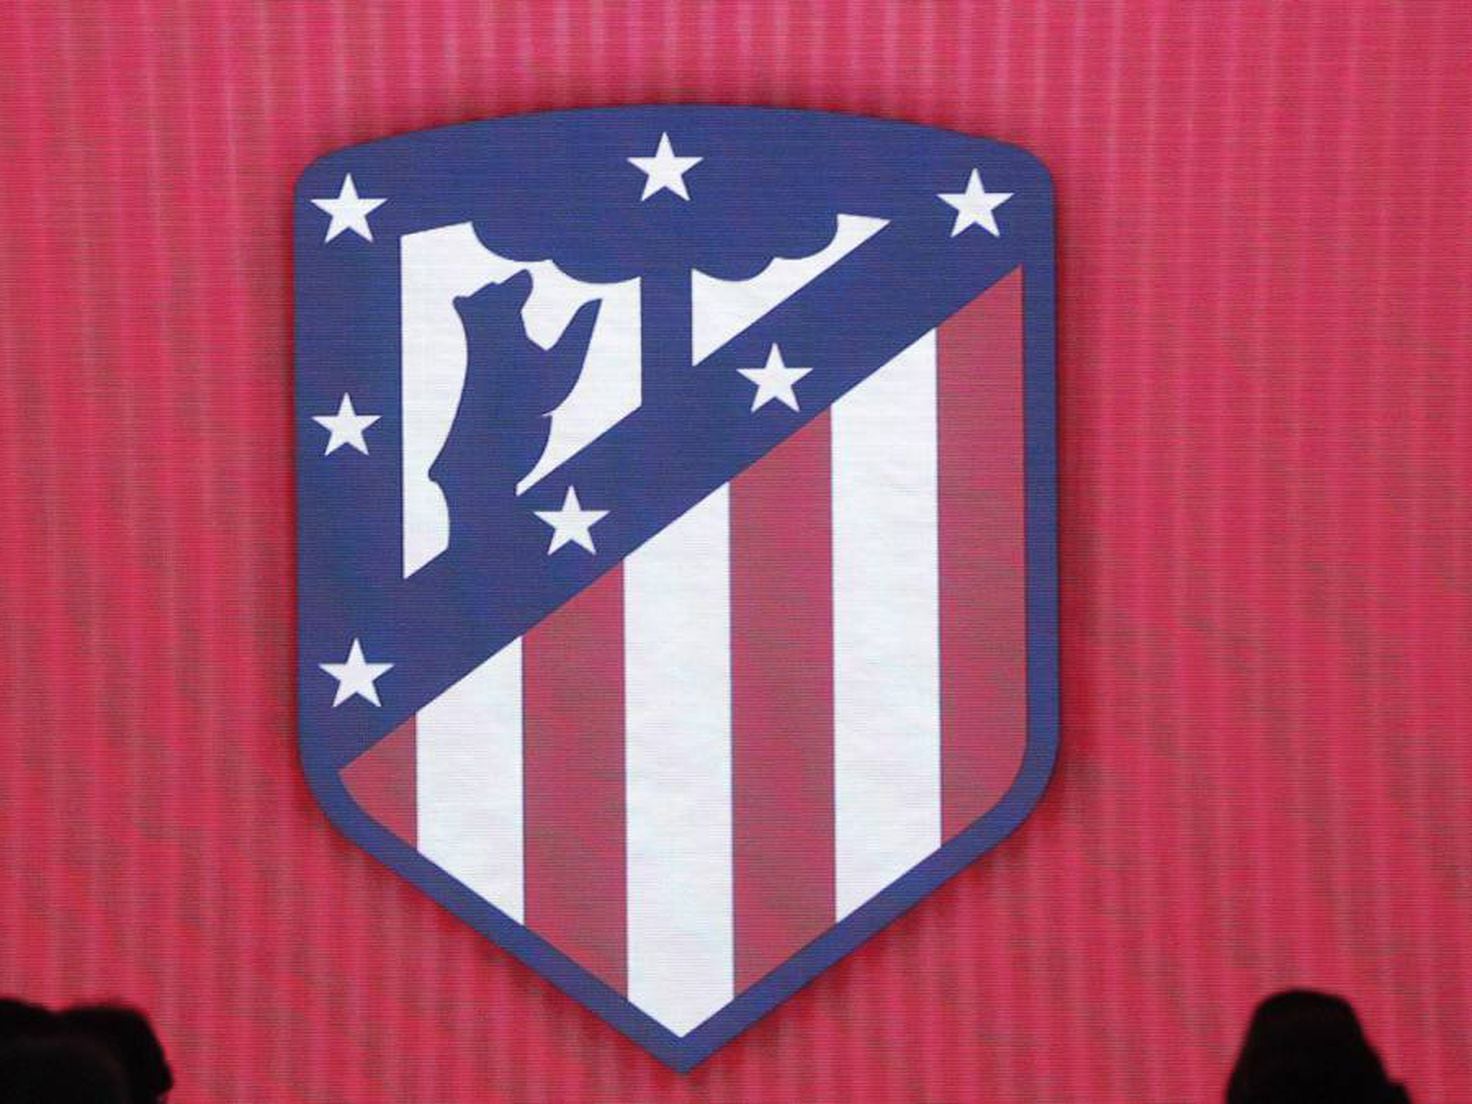 Qué ha pasado con el escudo del Atlético de Madrid?